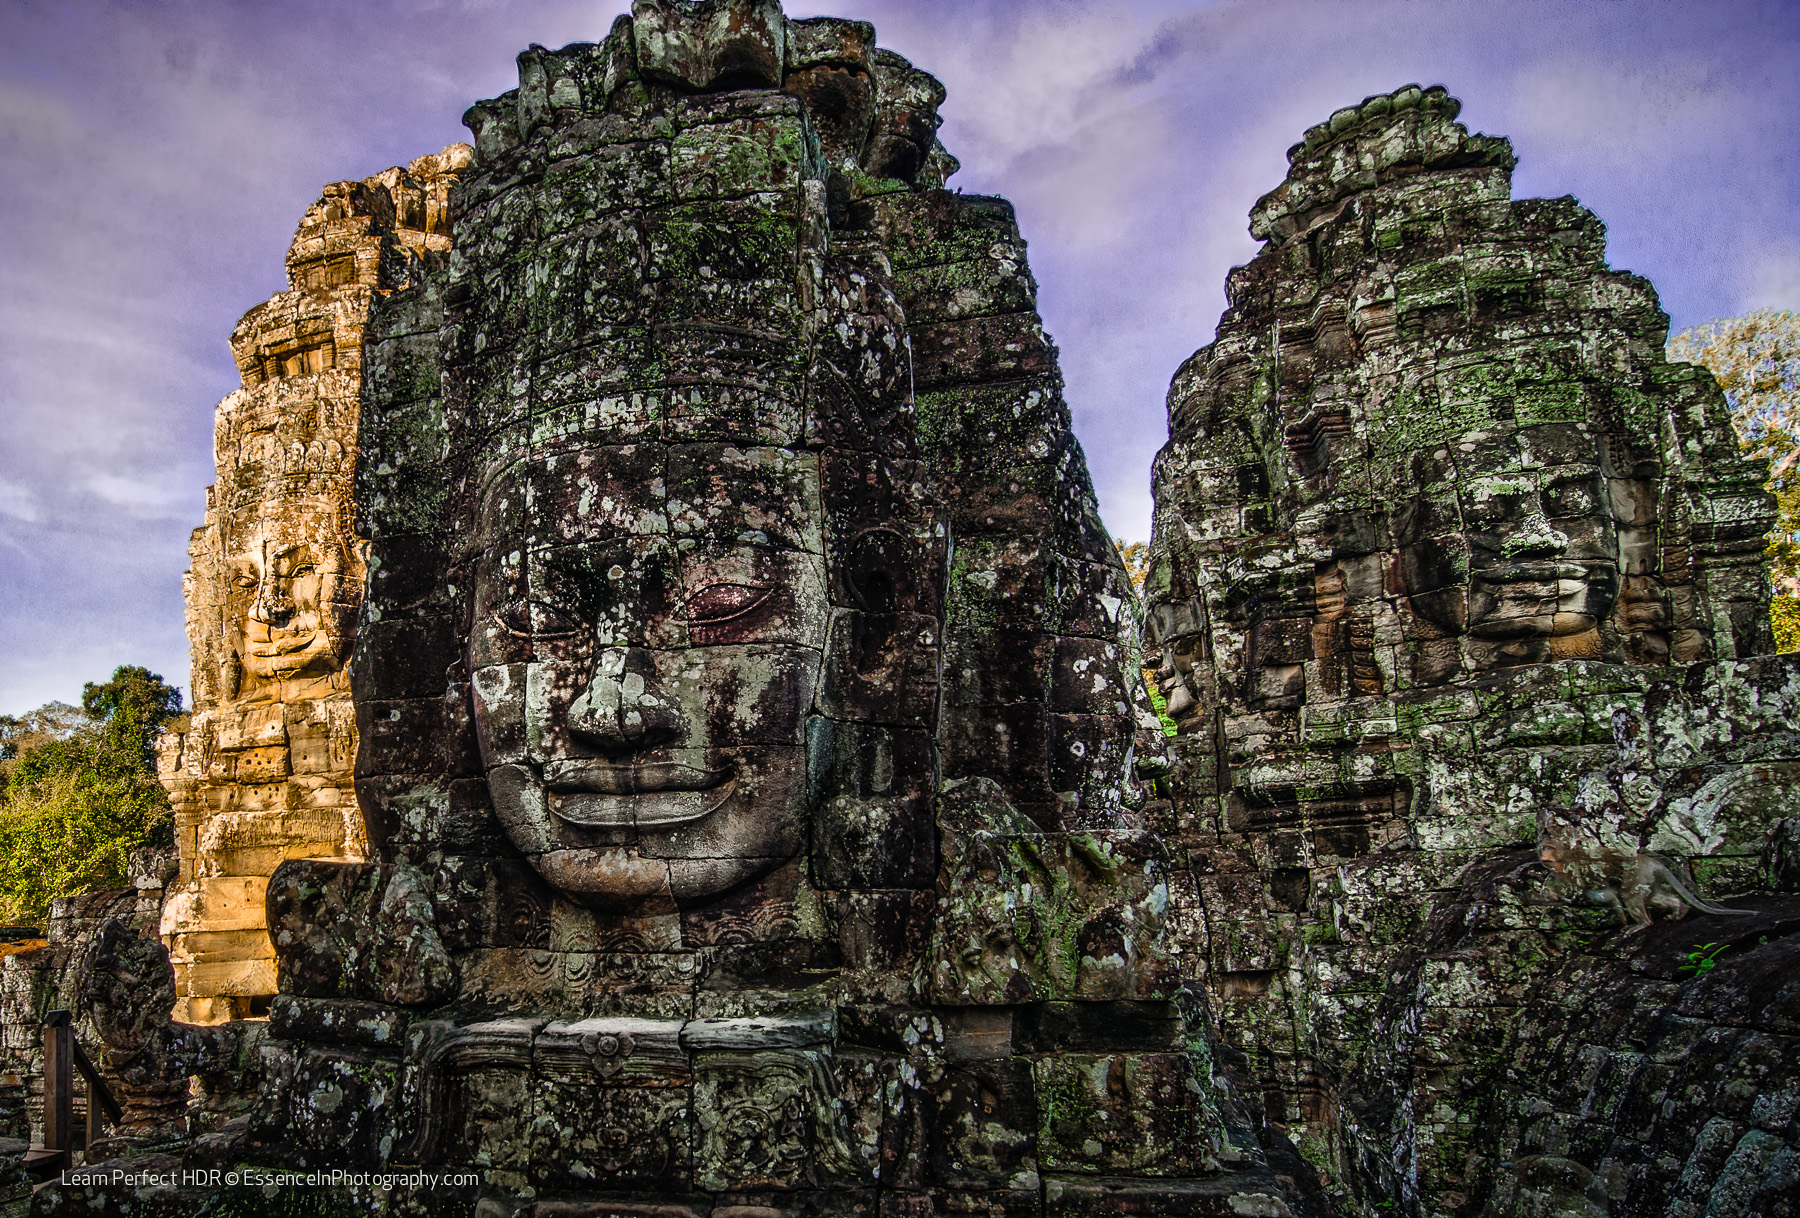 Angkor Thom: My Favorite Temple at Angkor Wat